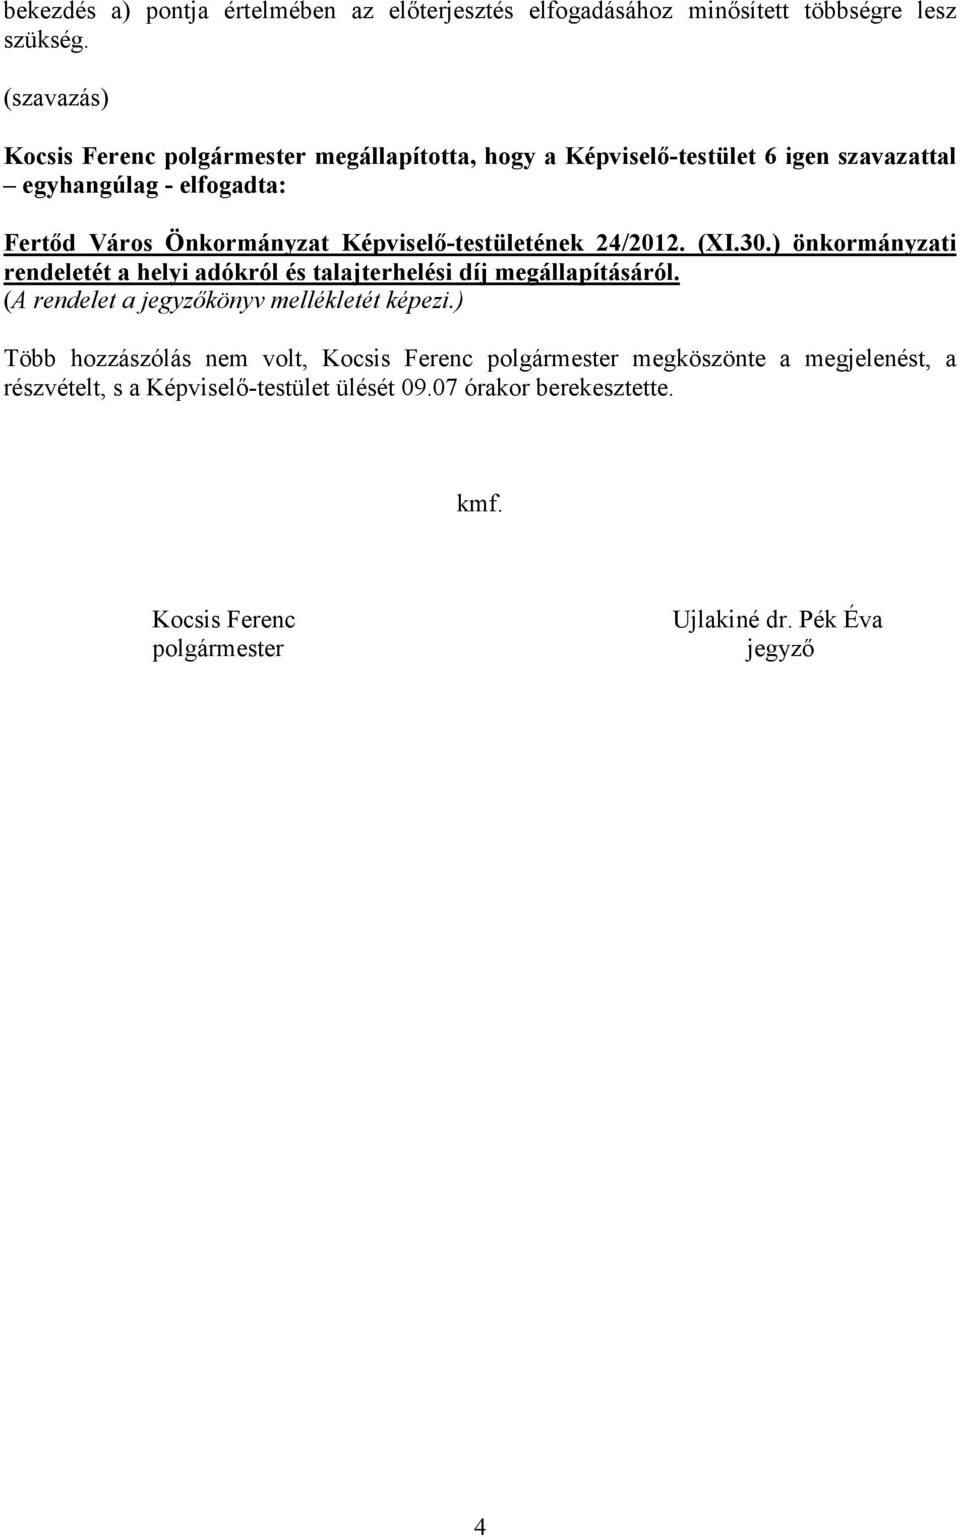 Képviselő-testületének 24/2012. (XI.30.) önkormányzati rendeletét a helyi adókról és talajterhelési díj megállapításáról.